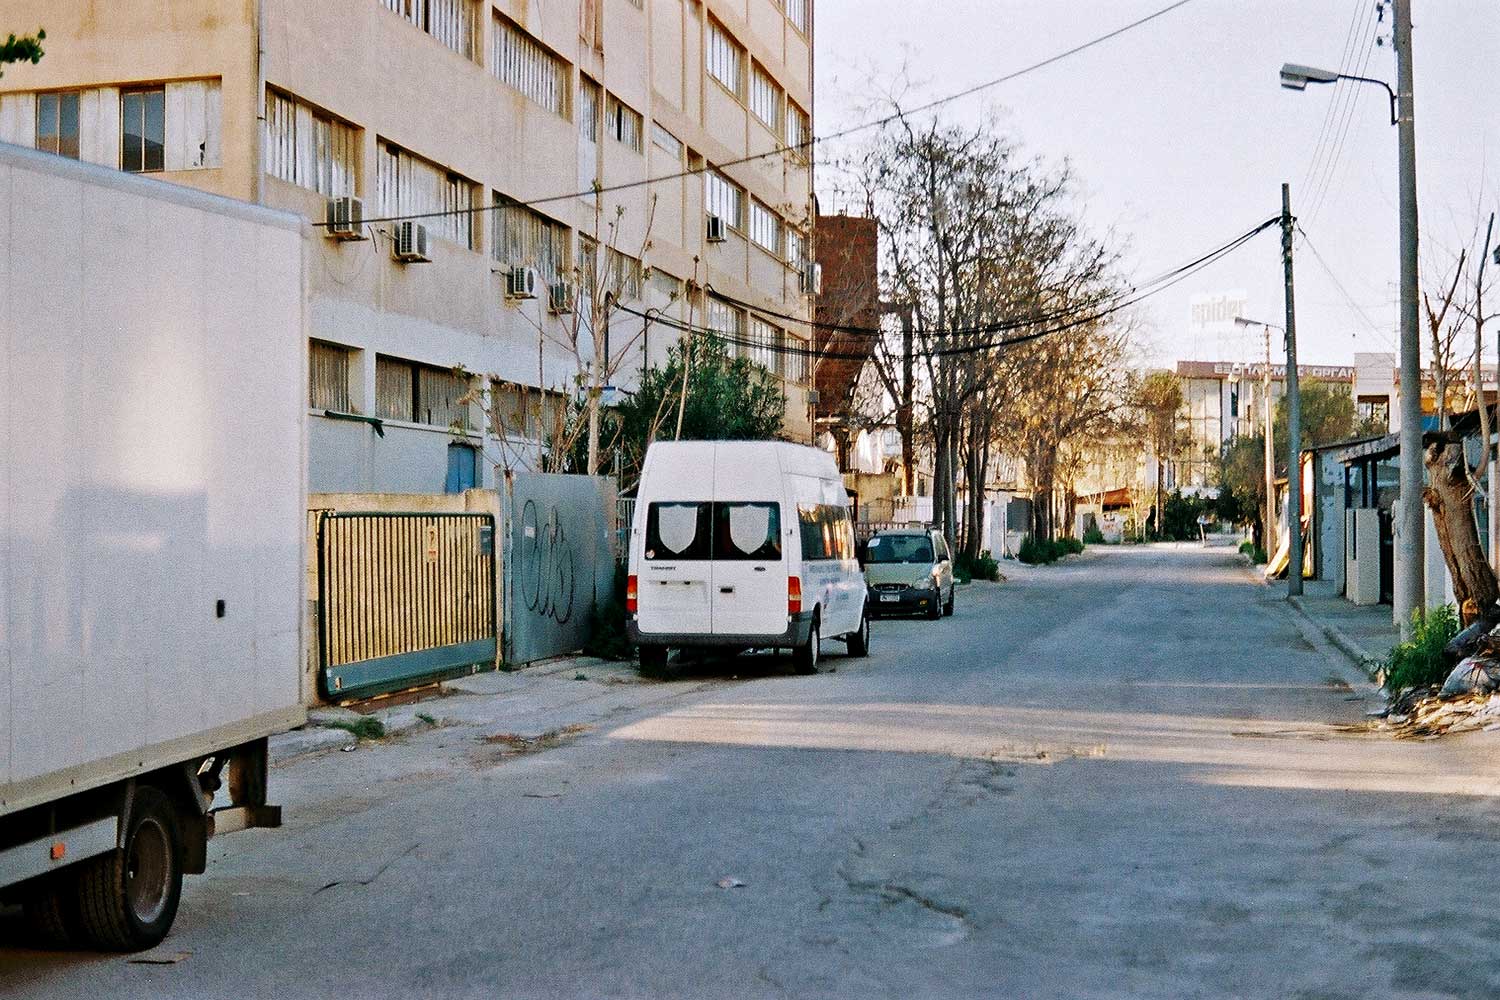 Κατηφορίζοντας την οδό Θεσσαλονίκης. Ένας μακρύς δρόμος που θυμίζει μία άλλη εποχή...